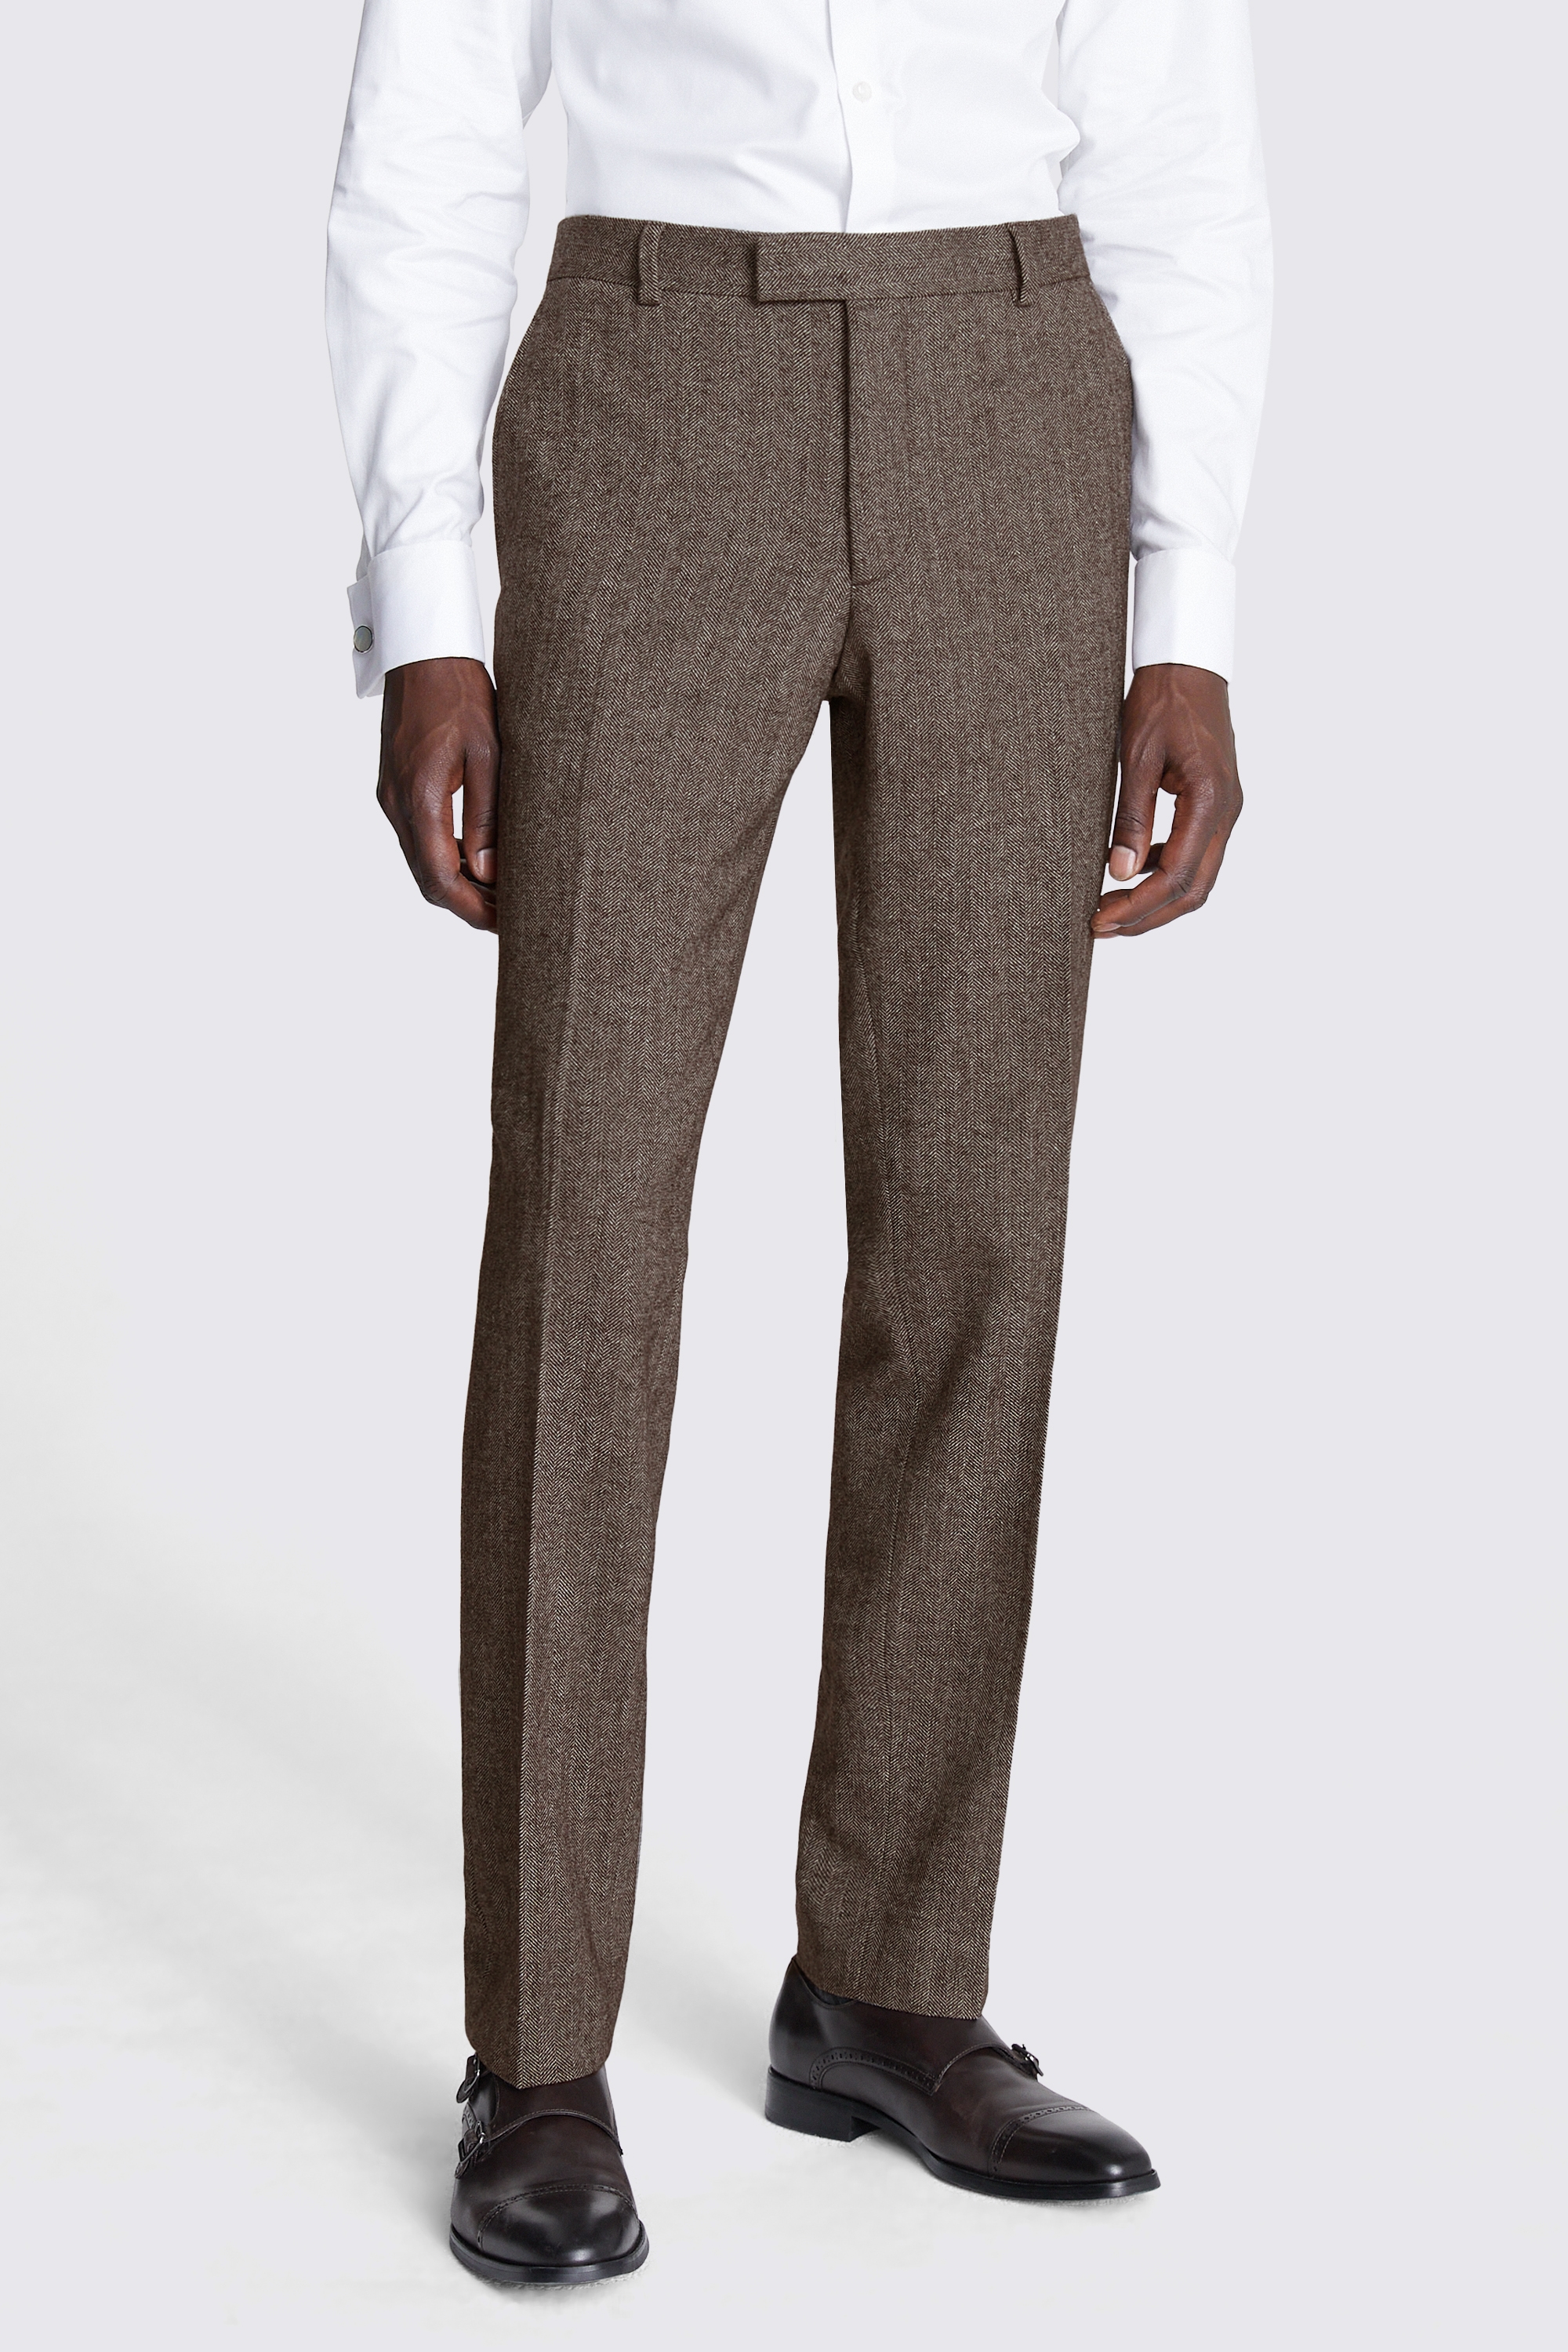 Slim Fit Brown Tweed Trousers | Buy Online at Moss